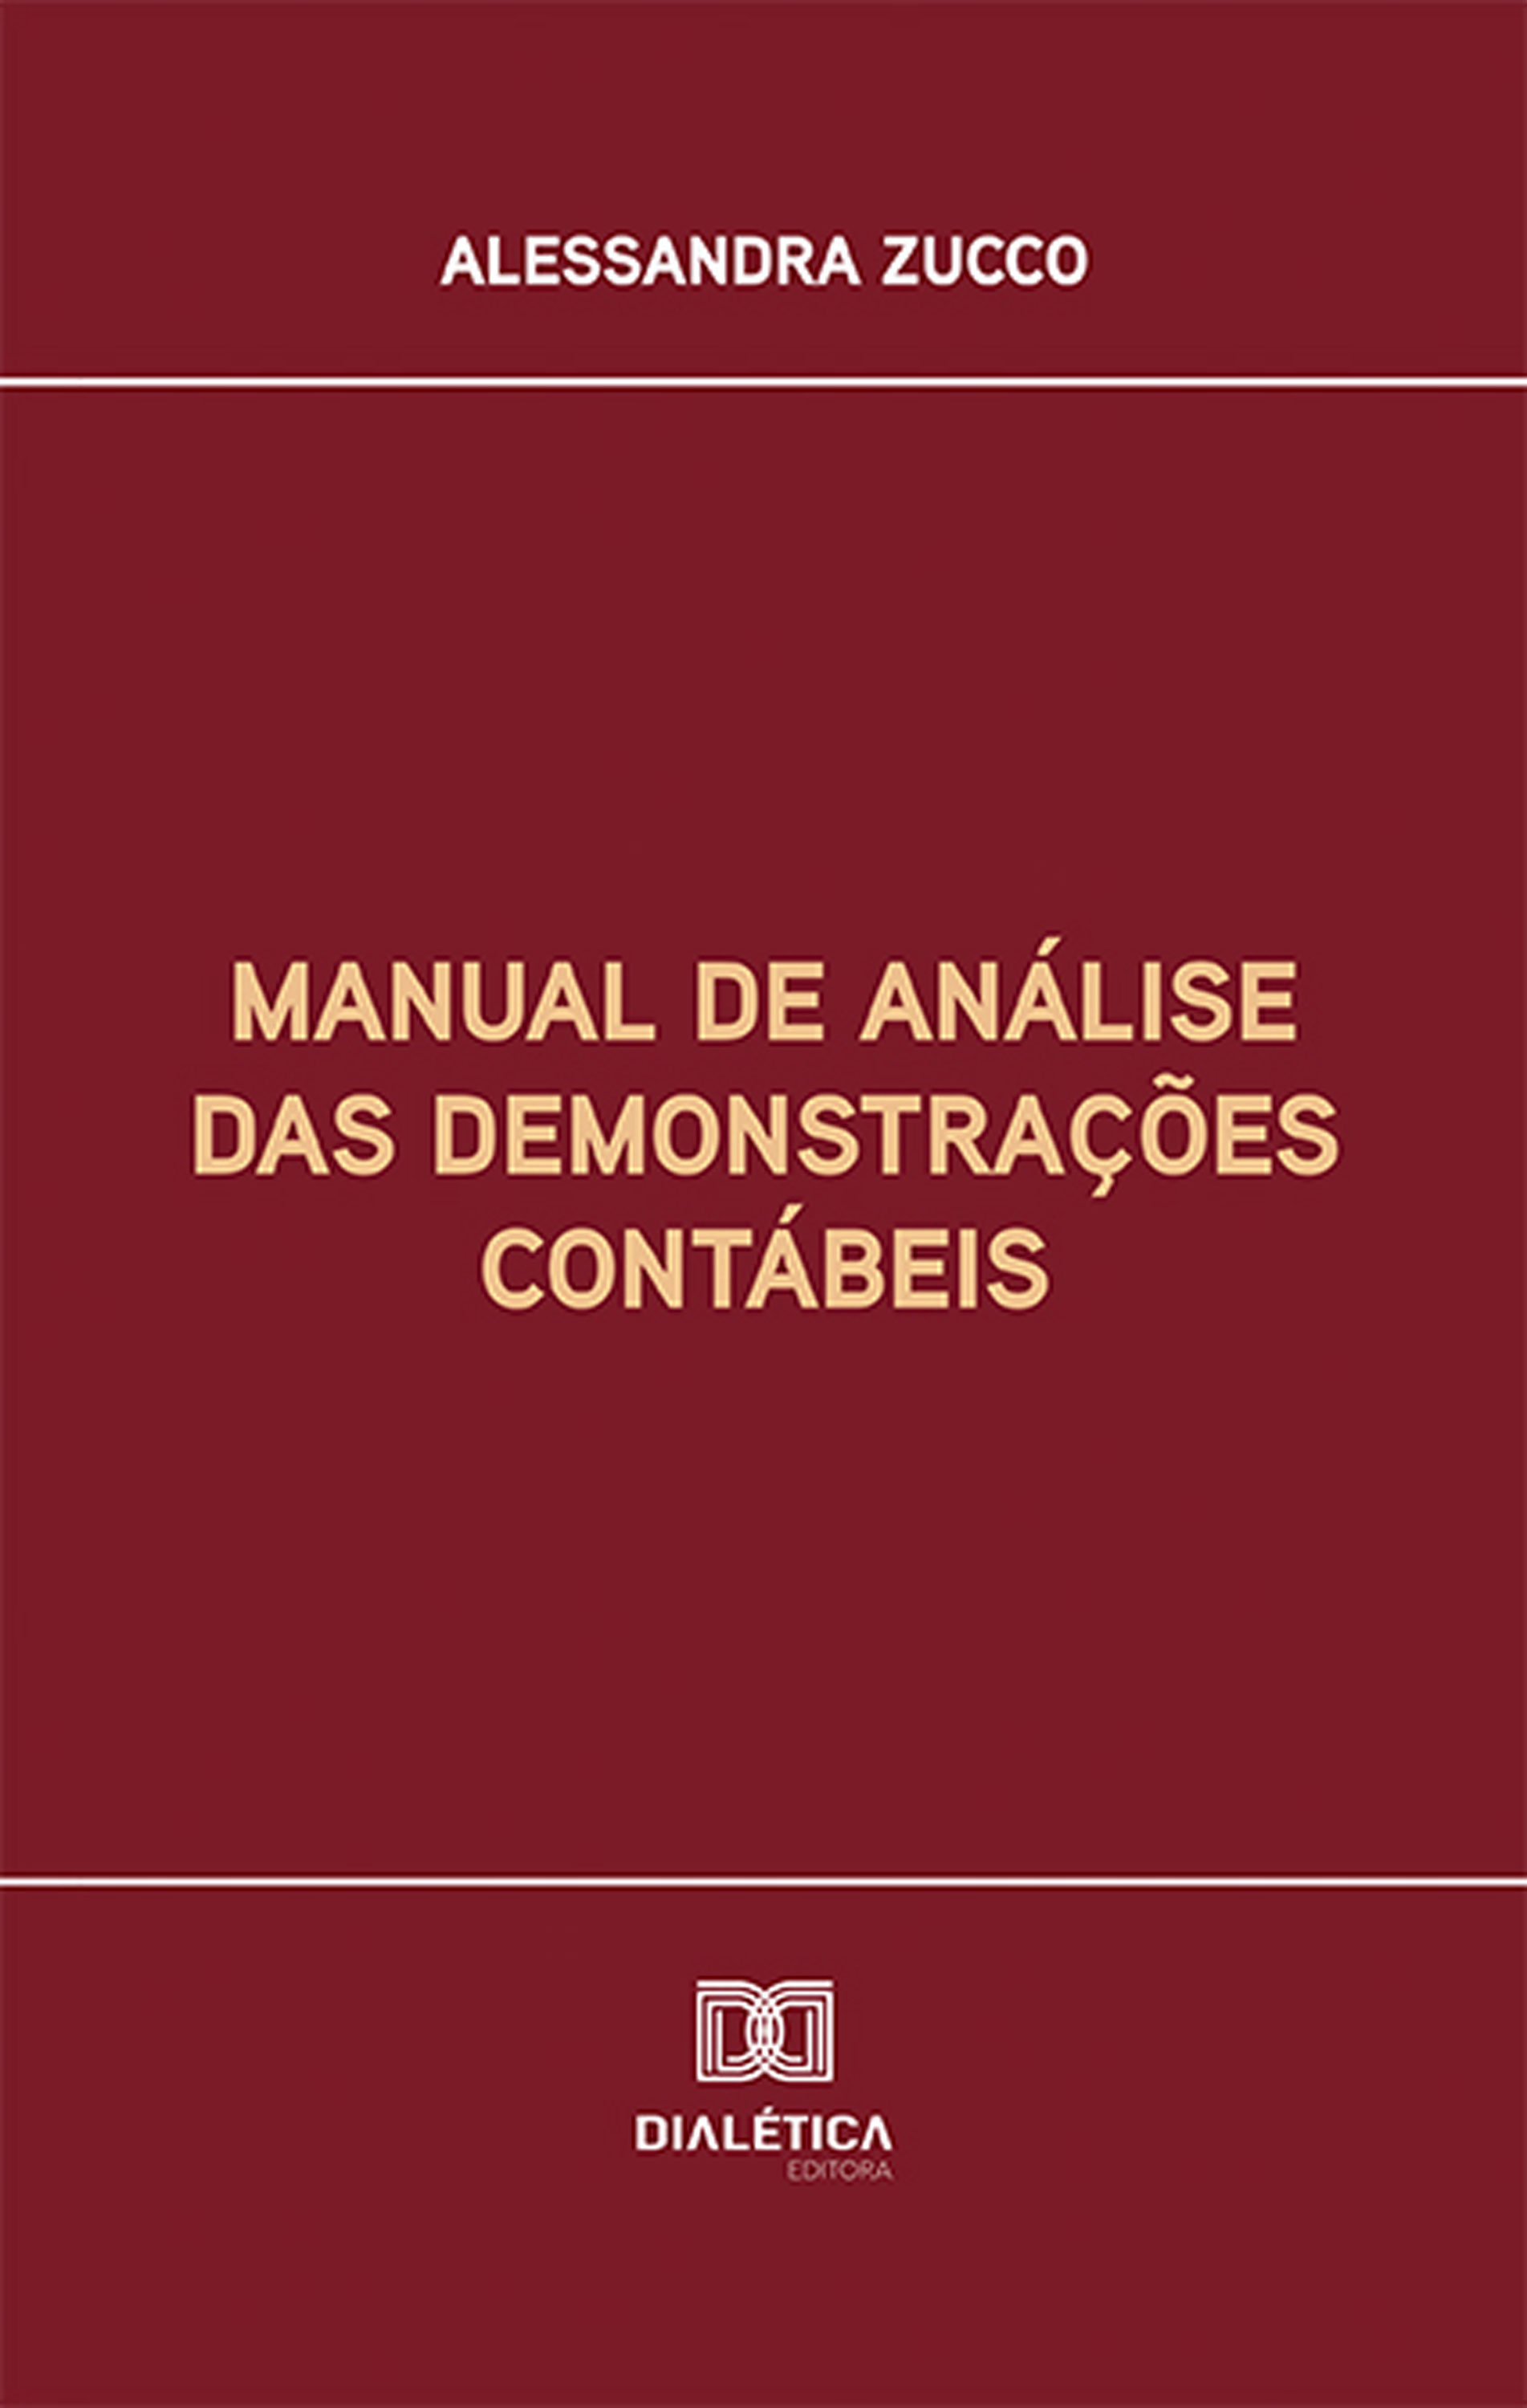 Manual de análise das demonstrações contábeis